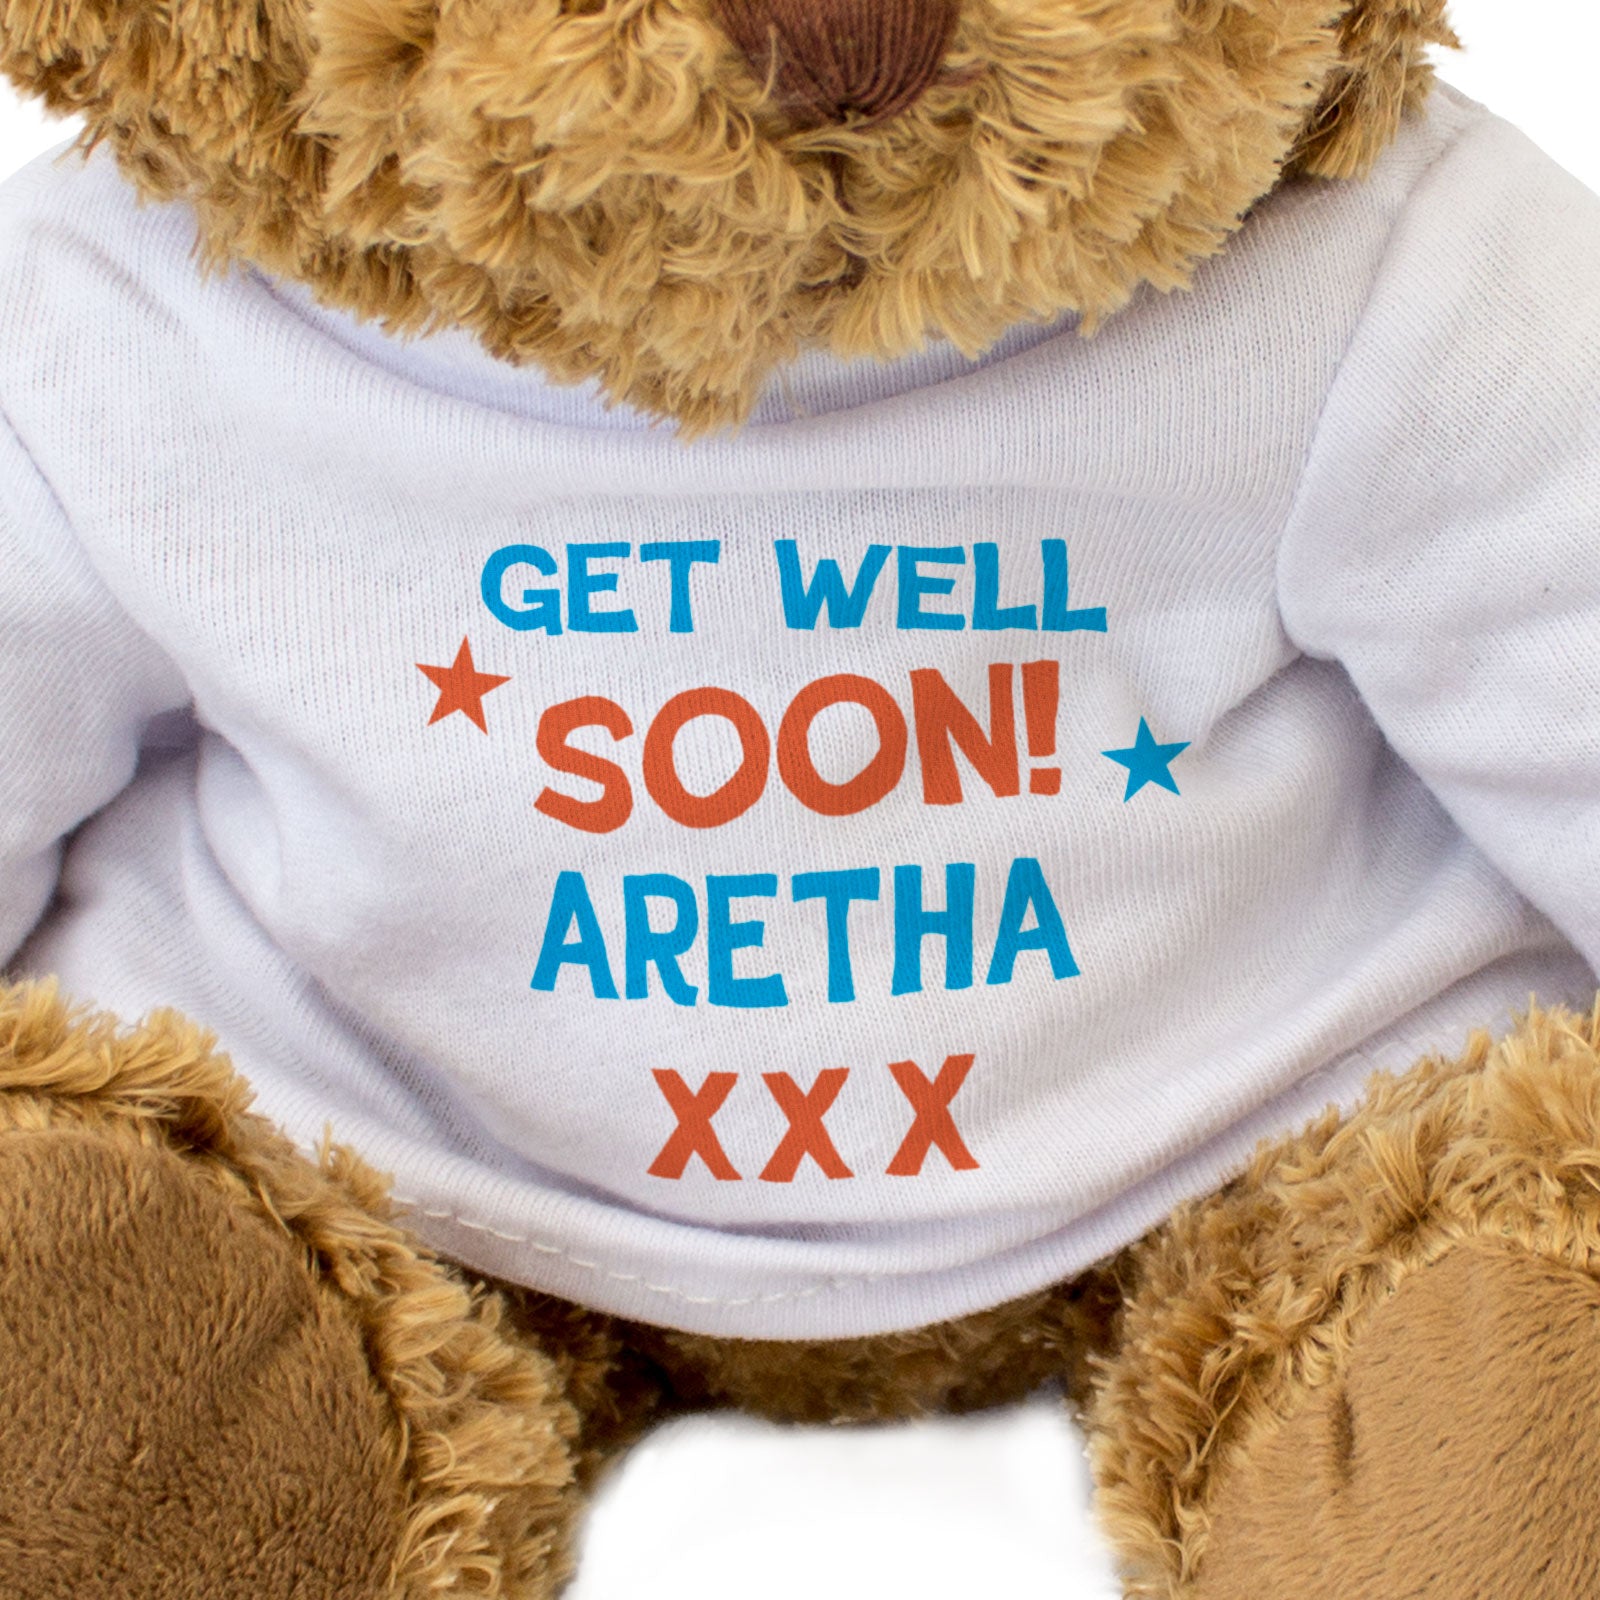 Get Well Soon Aretha - Teddy Bear